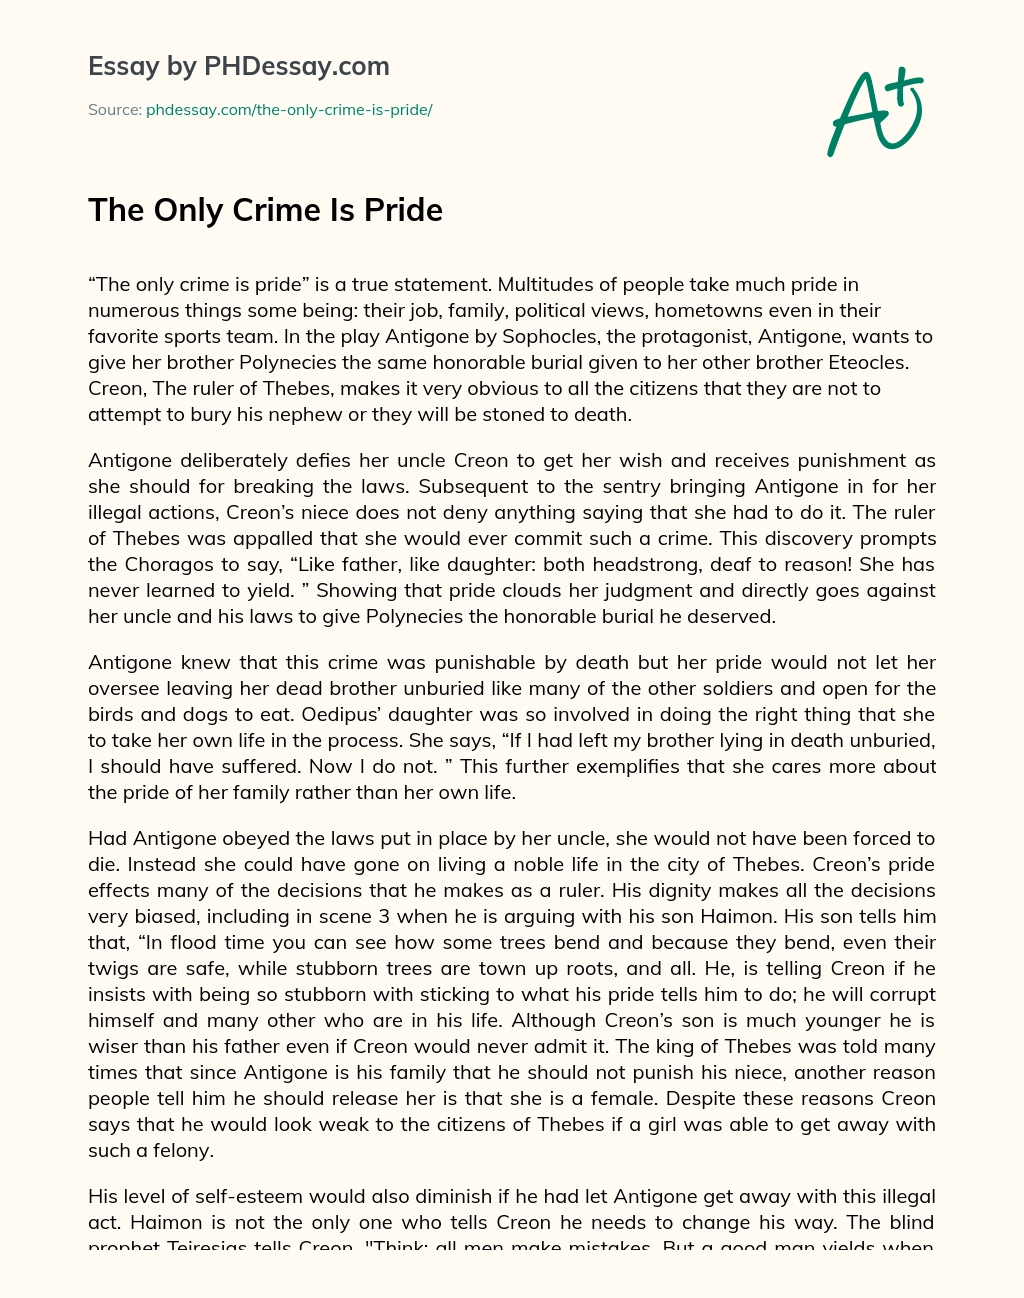 antigone pride essay